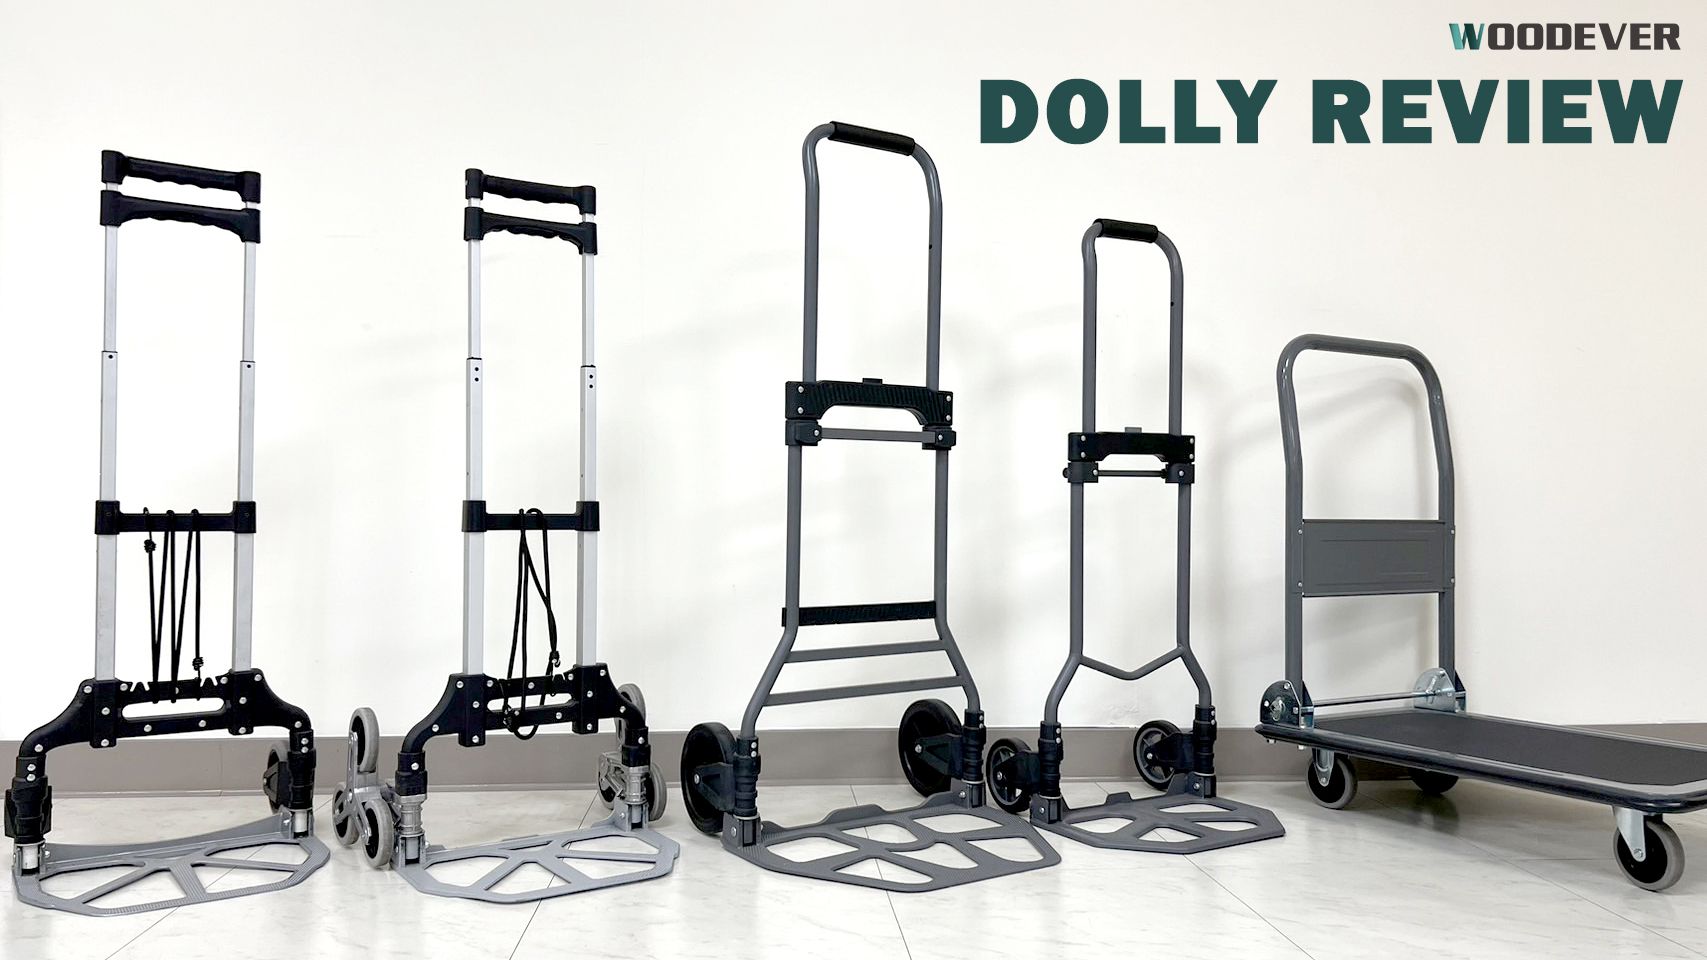 Top 5 Opvouwbare Dolly Karren voor persoonlijk gebruik, gemaakt van duurzaam staal en aluminium, en aangeboden tegen fabrieksprijzen door WOODEVER.